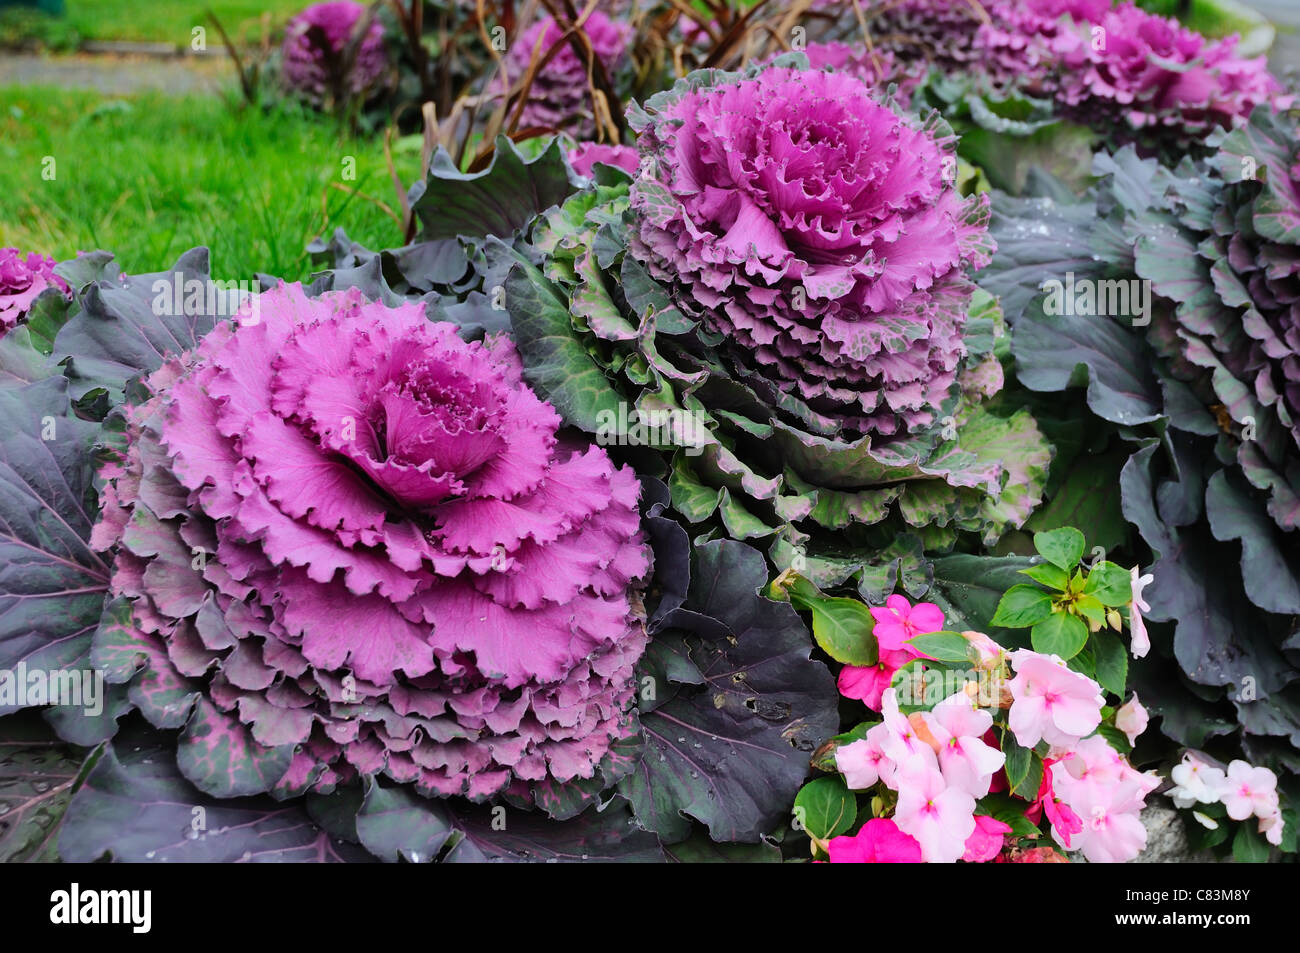 Eine Blume Grun Und Lila Kohl Den Garten Zu Verzieren Stockfotografie Alamy